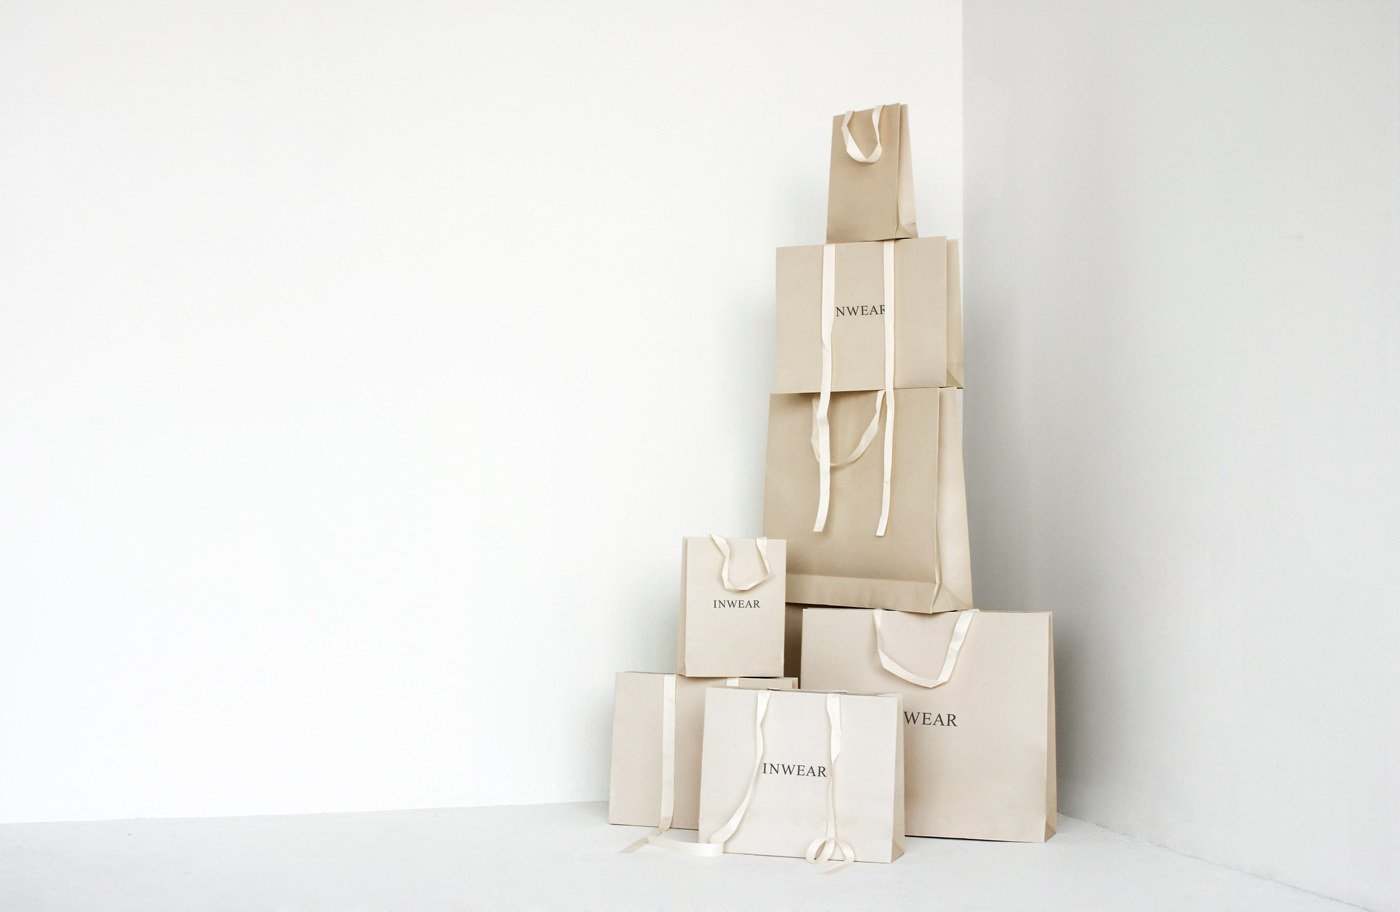 Inwear – Shopping bags